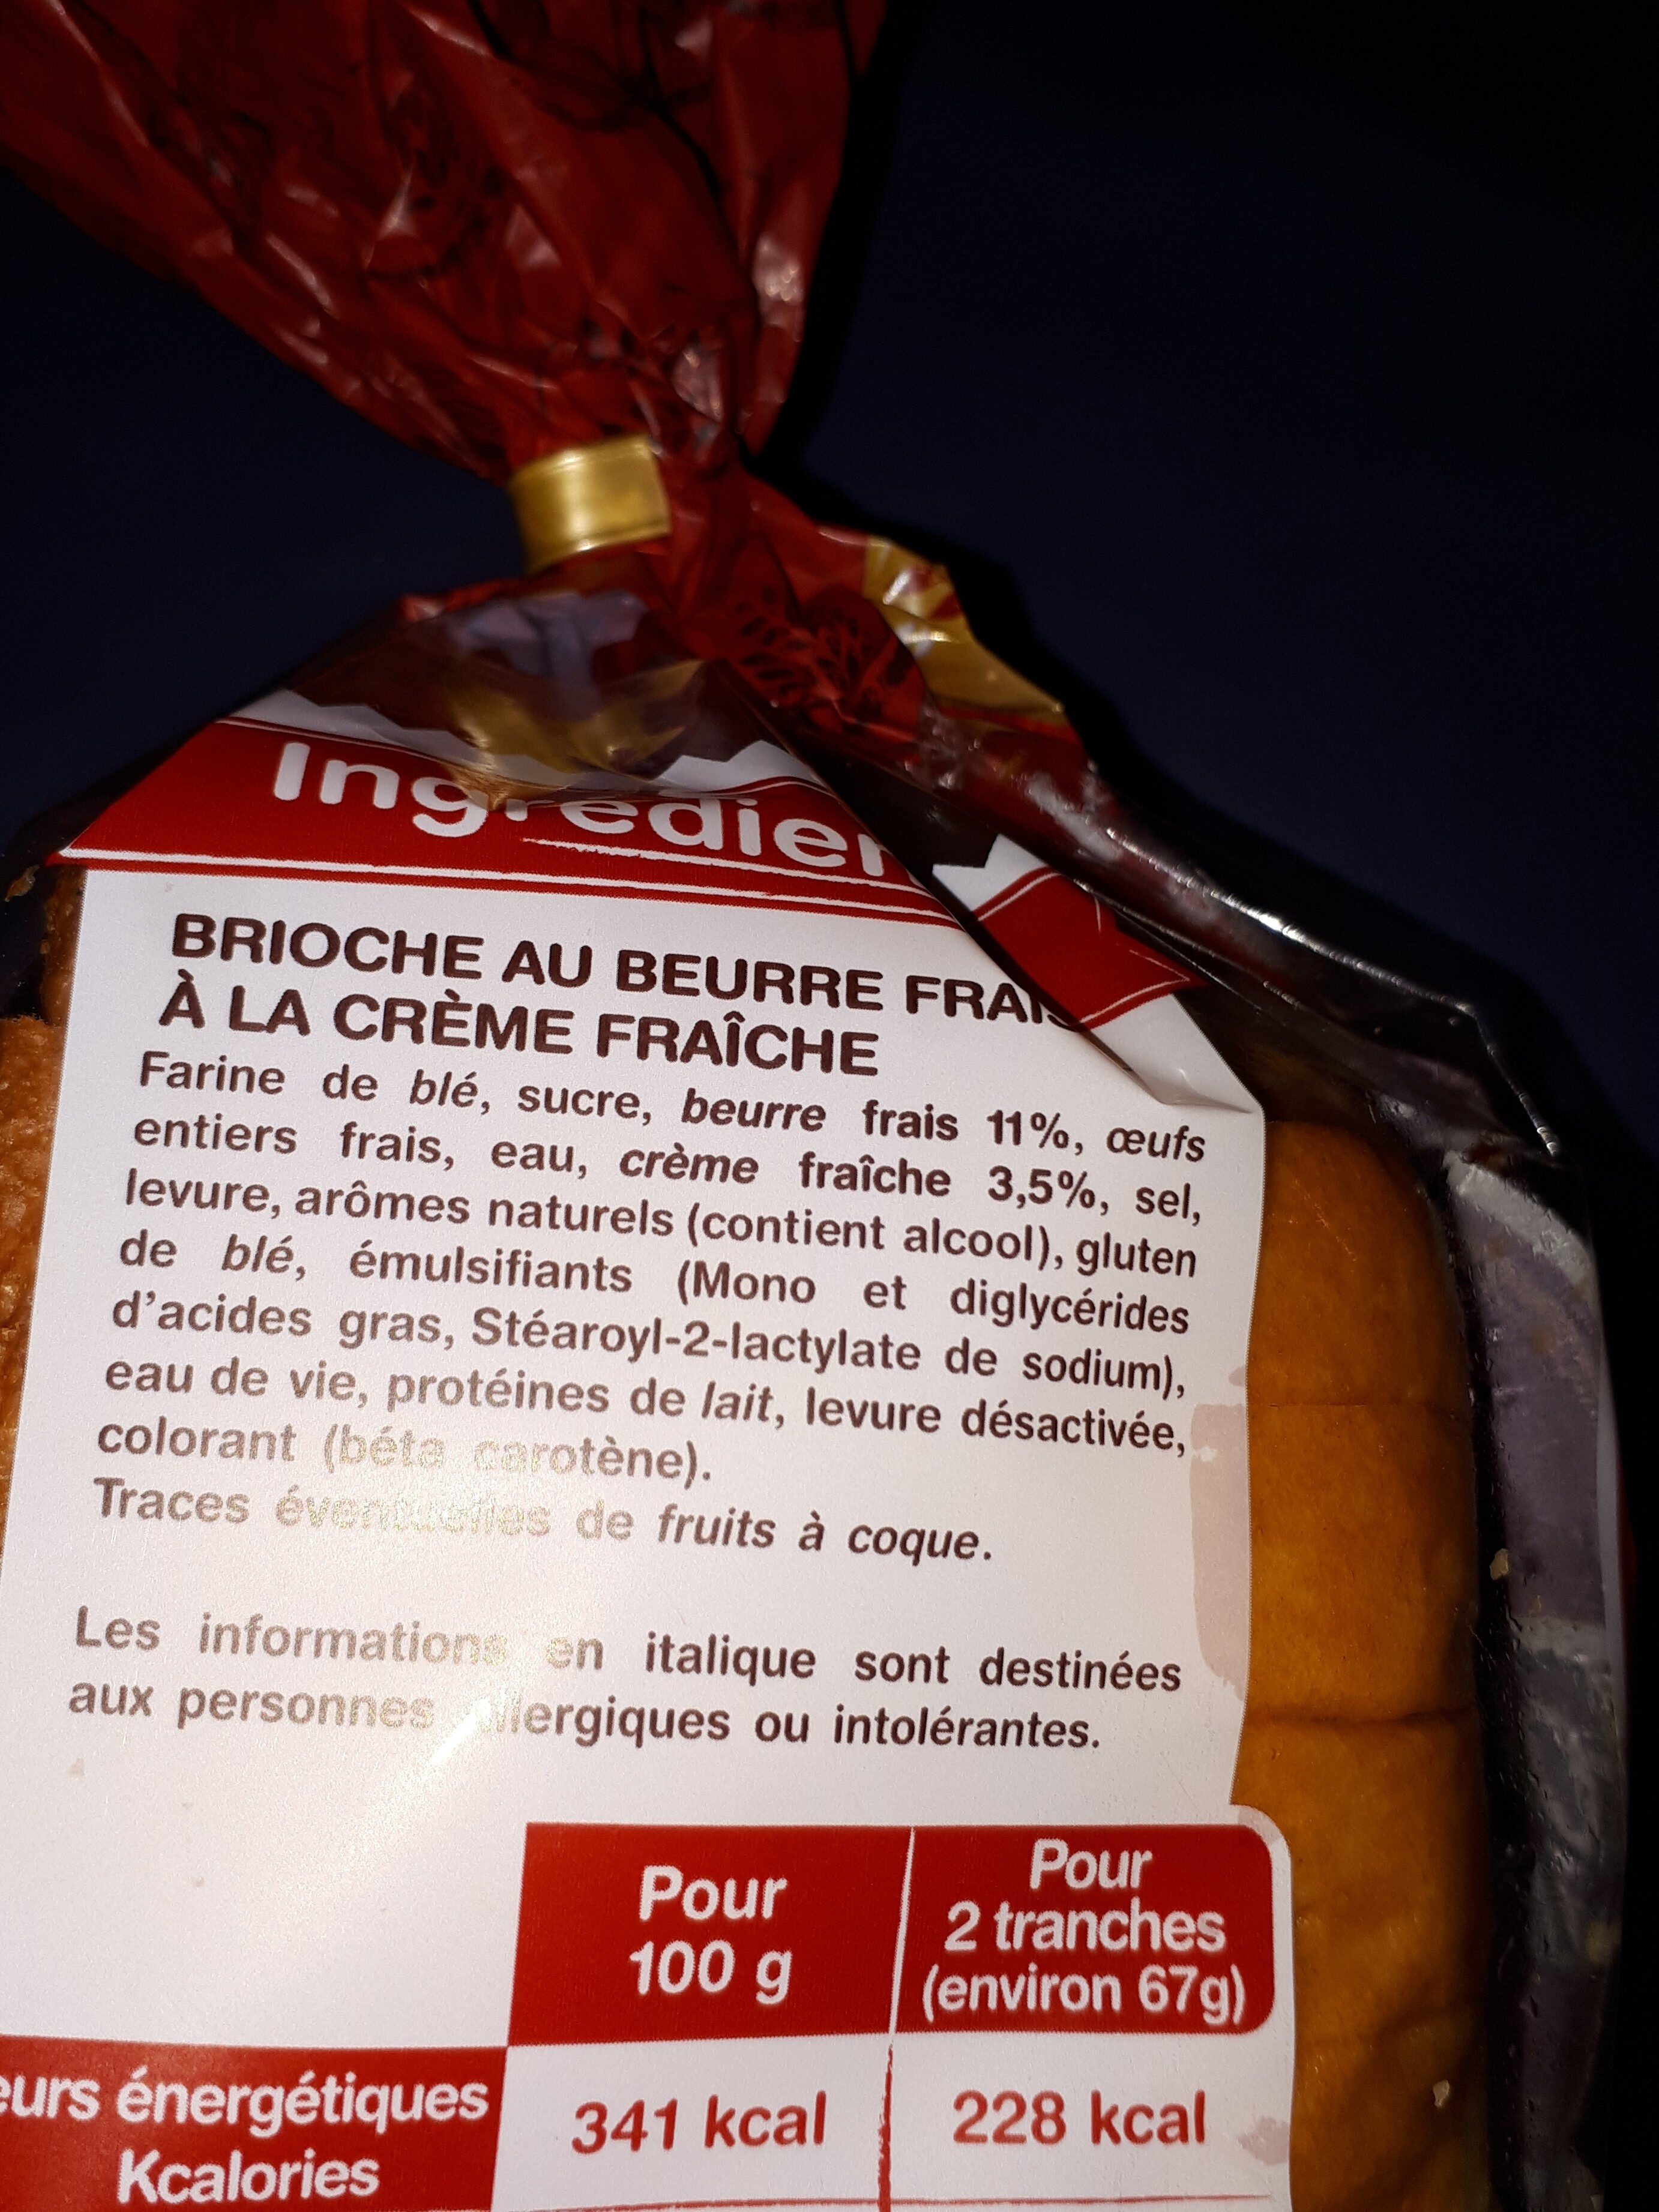 La Gâche Tranchée au Beurre Frais et à la Crème Fraîche - Ingredienti - fr